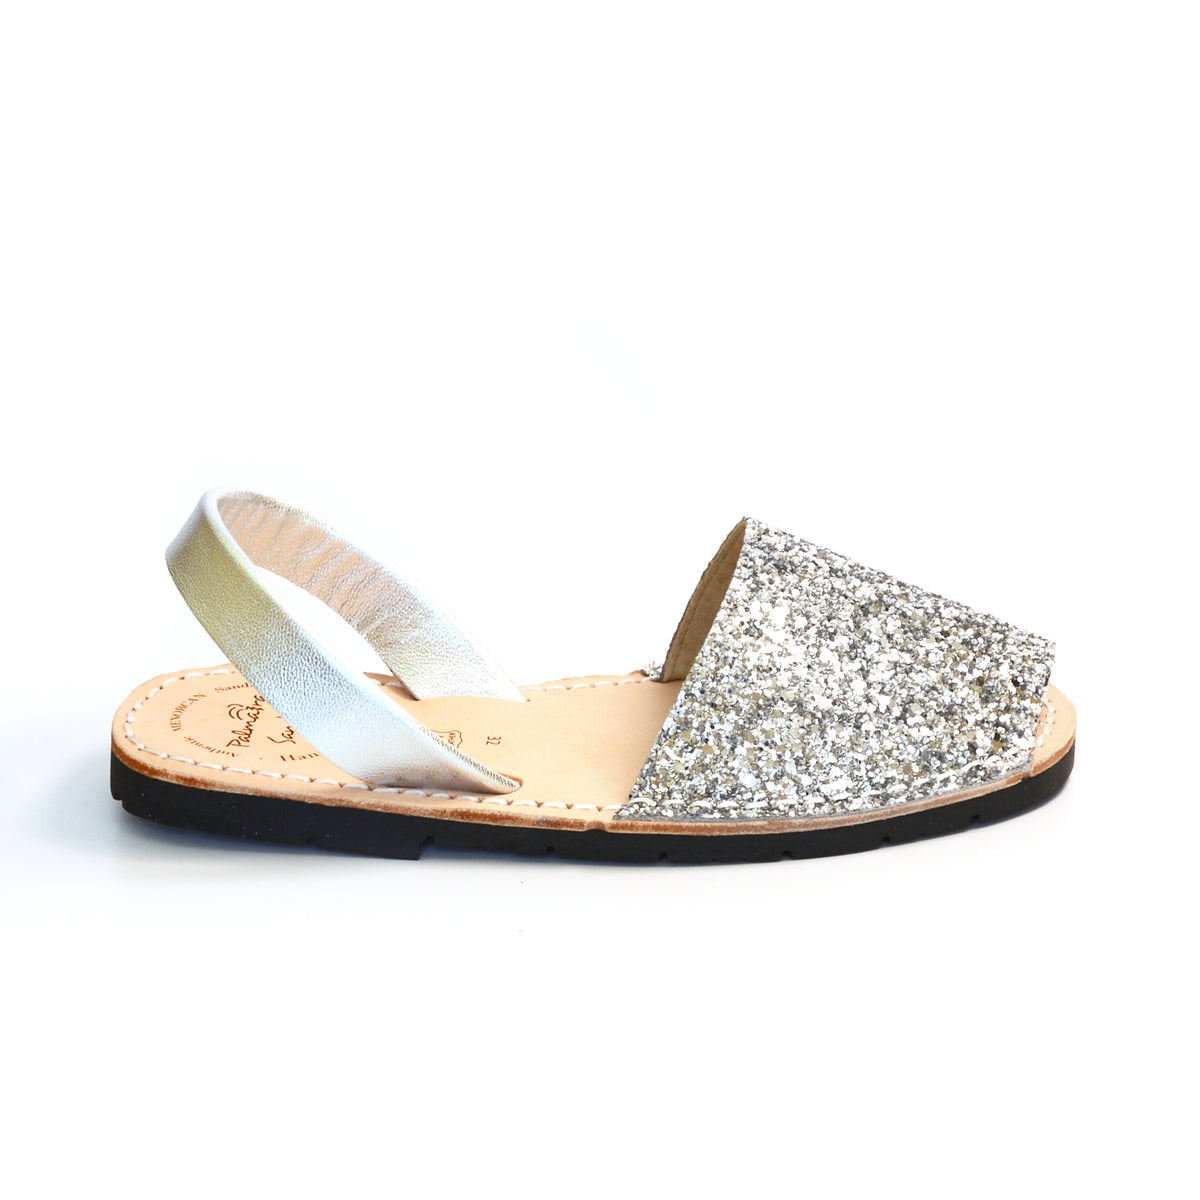 Silver glitter kids slingback spanish menorcan avarcas sandals